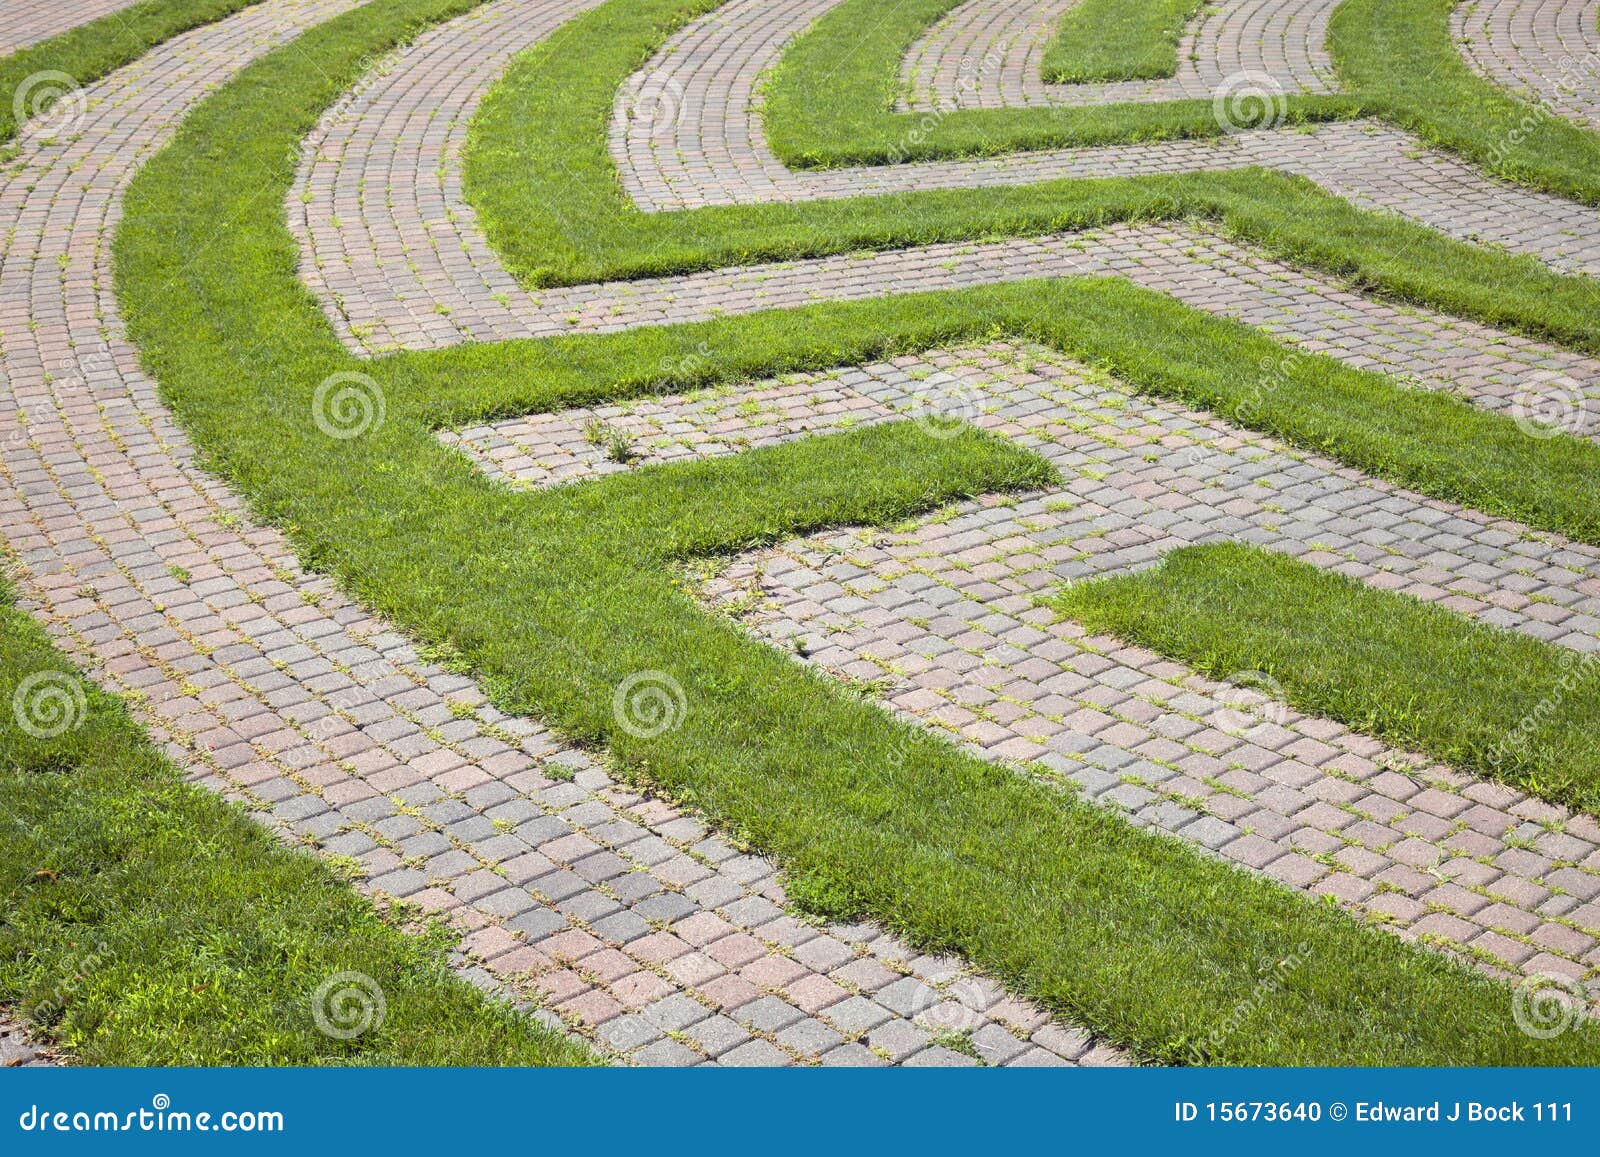 grass and cobblestone maze